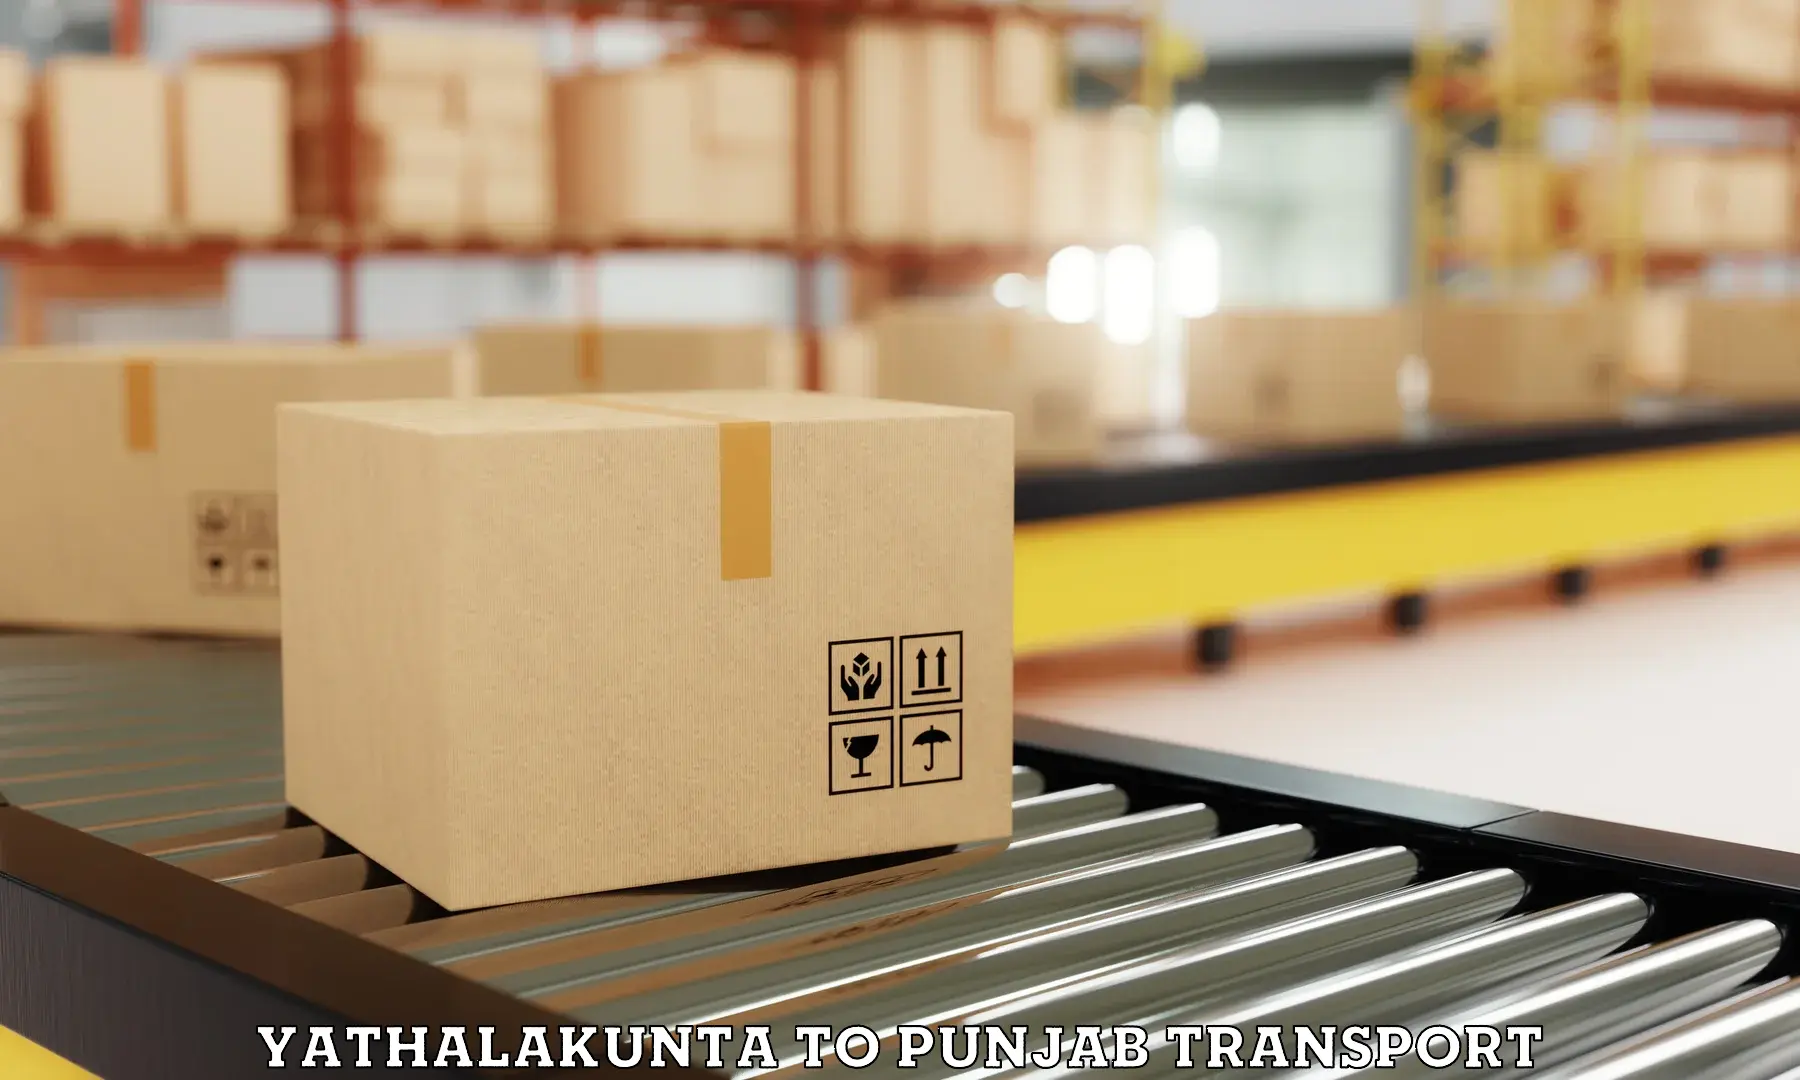 Shipping partner Yathalakunta to Punjab